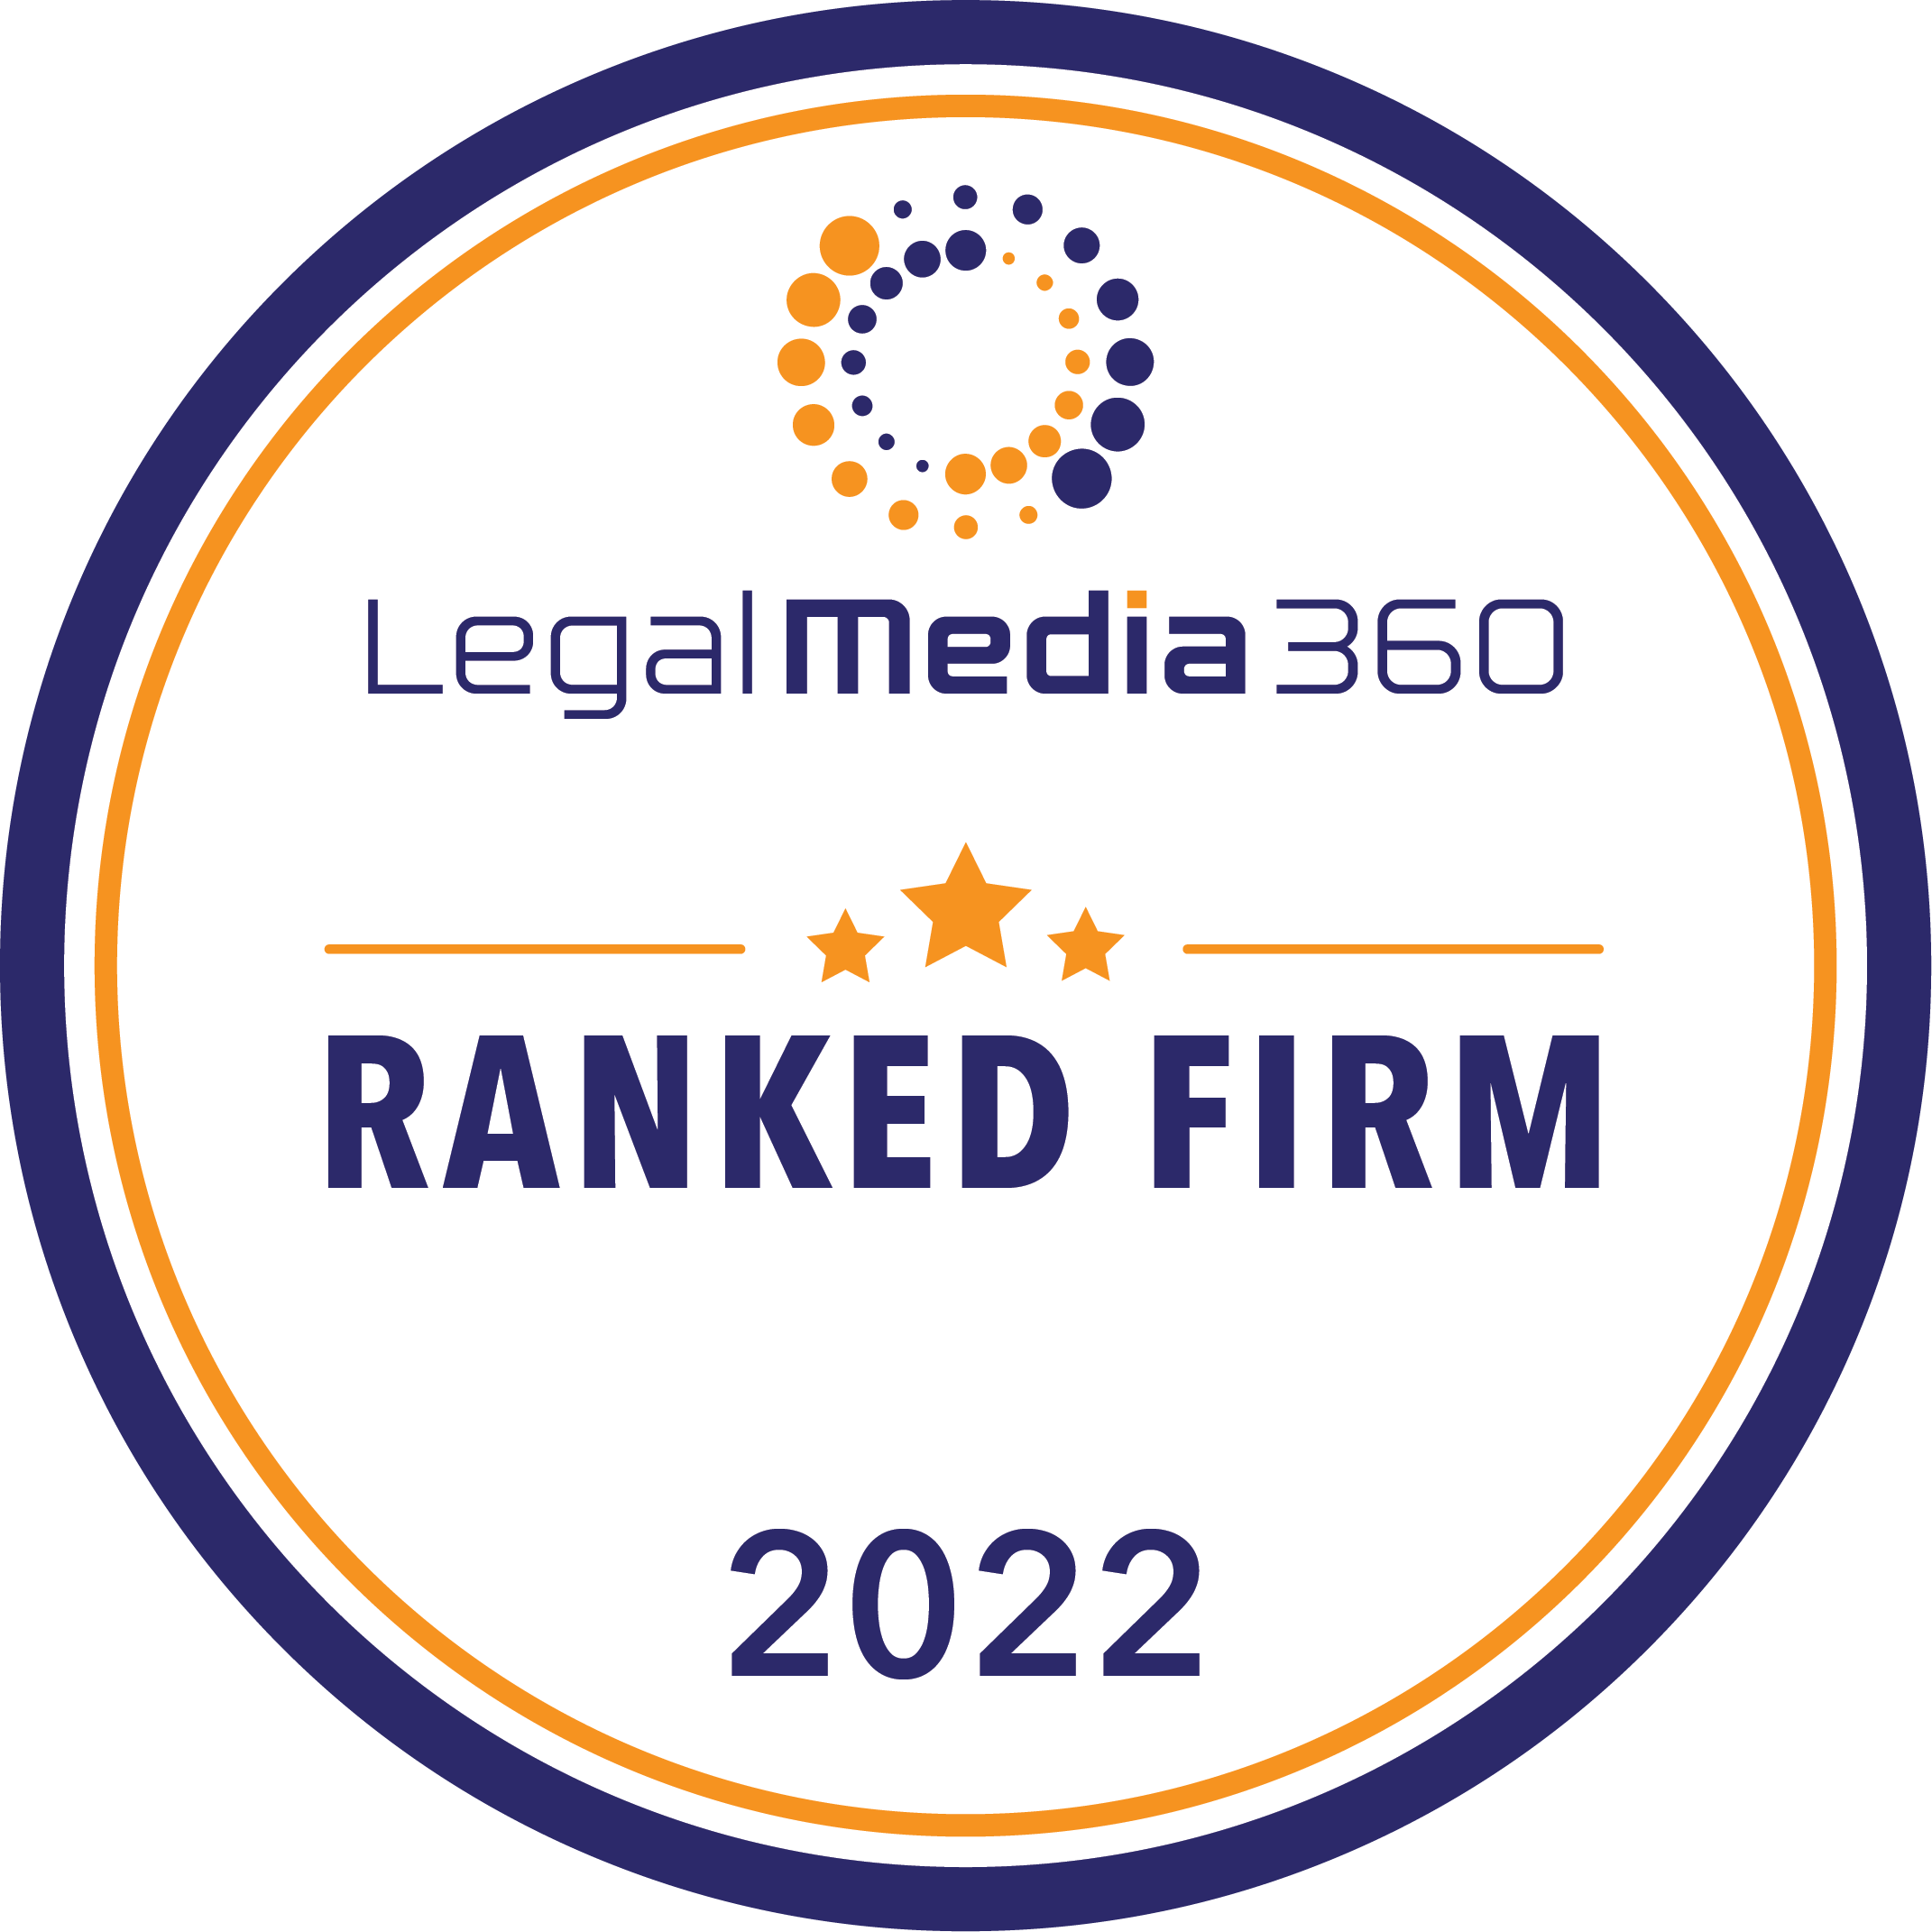 《法律媒体 360》(Legal Media 360) 评为2022年度香港法律专家